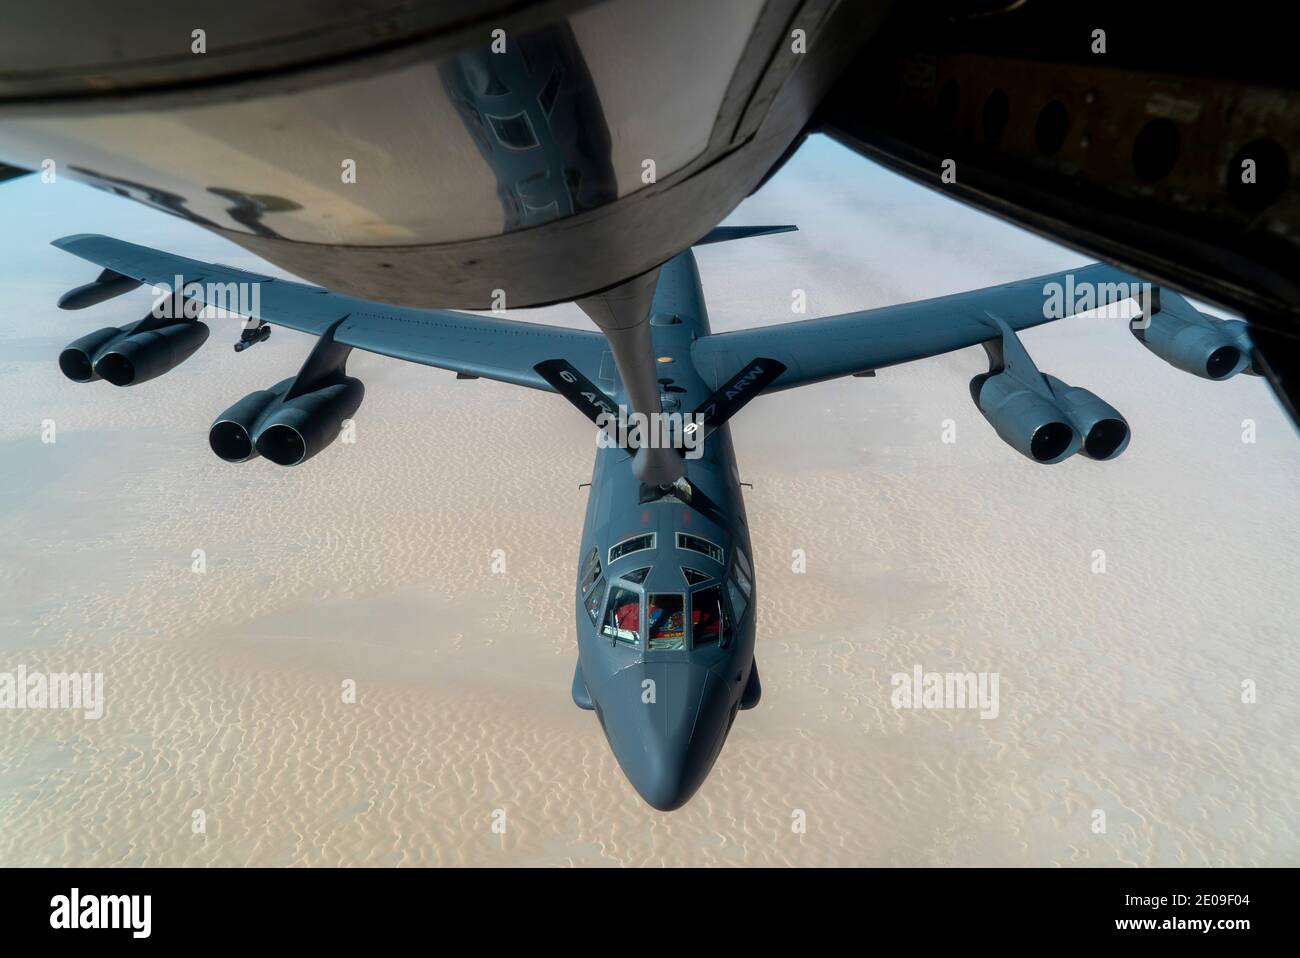 Golfe persique, États-Unis. 30 décembre 2020. Un bombardier stratégique B-52 de la Force aérienne des États-Unis, Stratofortress, de la 5e Escadre Bomb, approche d'un KC-135 Stratotanker pour le ravitaillement en carburant le 30 décembre 2020 au-dessus du golfe Persique. Le bombardier est la troisième mission de démonstration de force de ce type en tant que message à l'Iran. Credit: Planetpix/Alamy Live News Banque D'Images